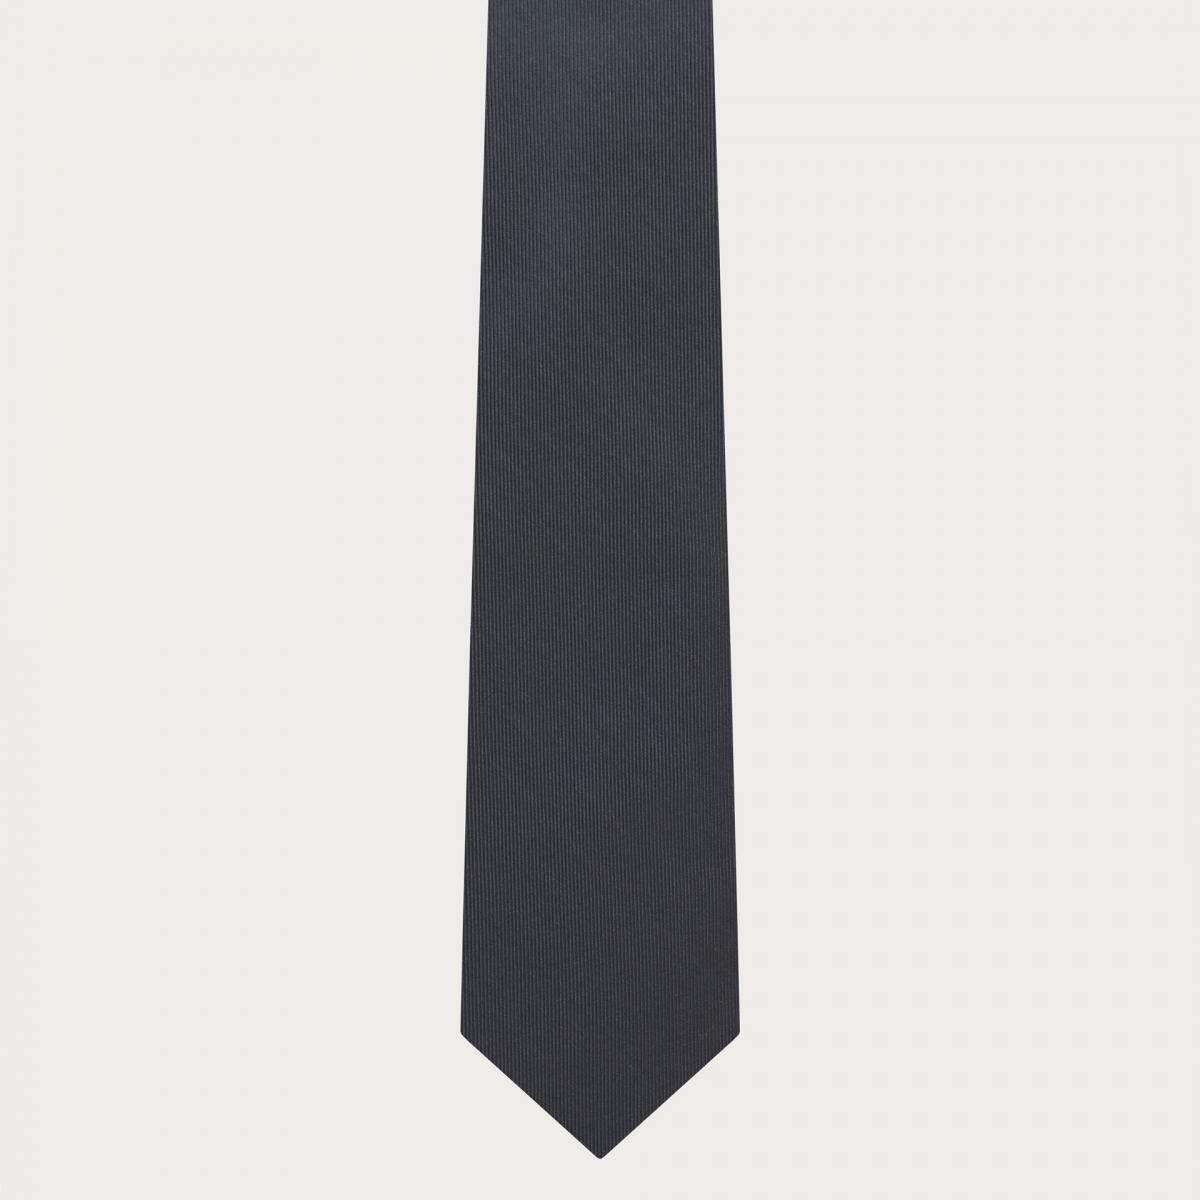 Cravatta in seta jacquard grigio antracite